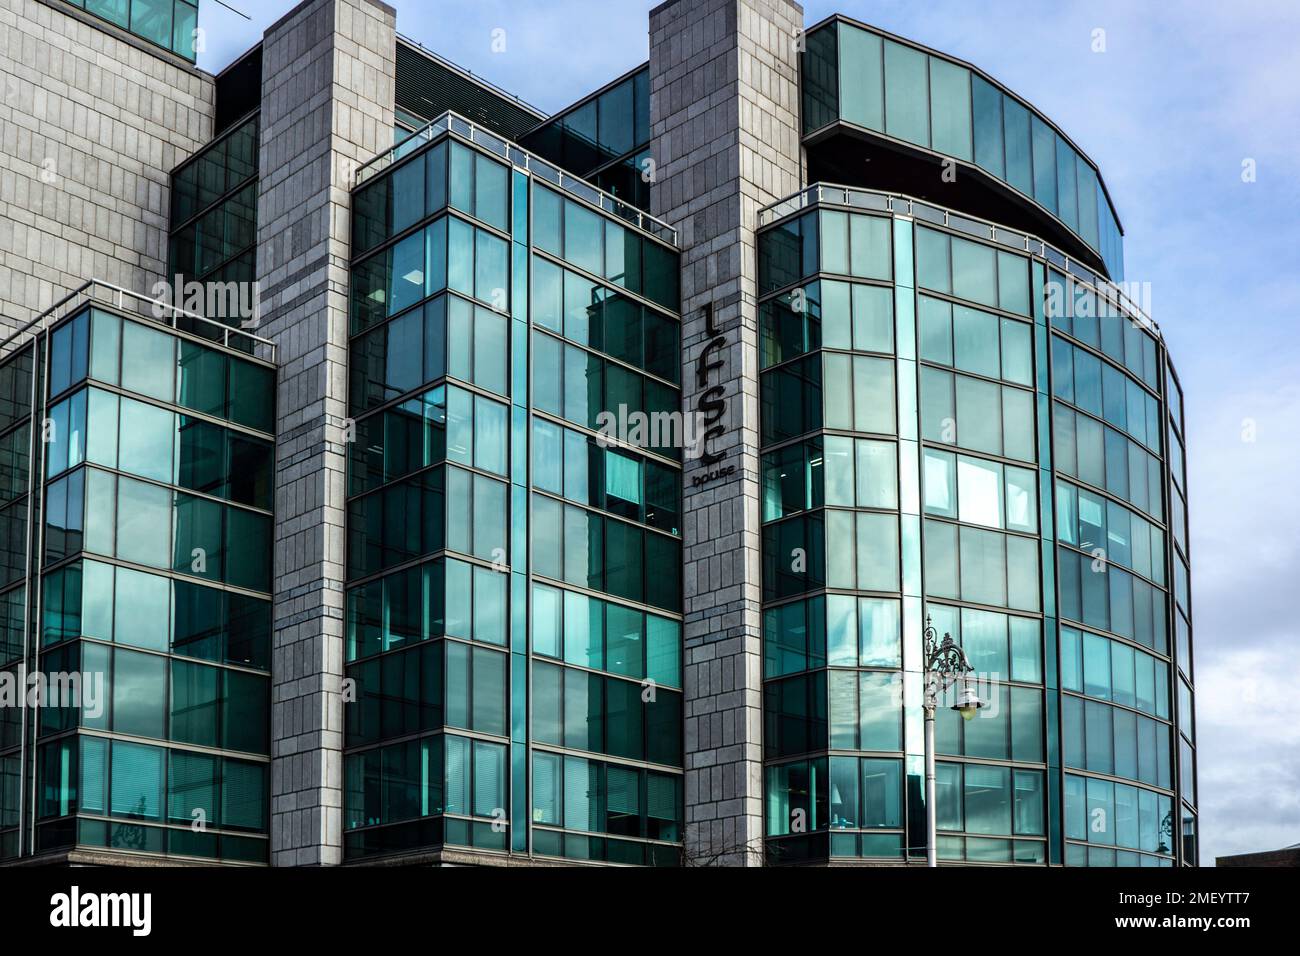 IFSC House, Custom House Quay, International Financial Services Centre, Dublino. La sede centrale del Centro Internazionale dei servizi finanziari. Foto Stock